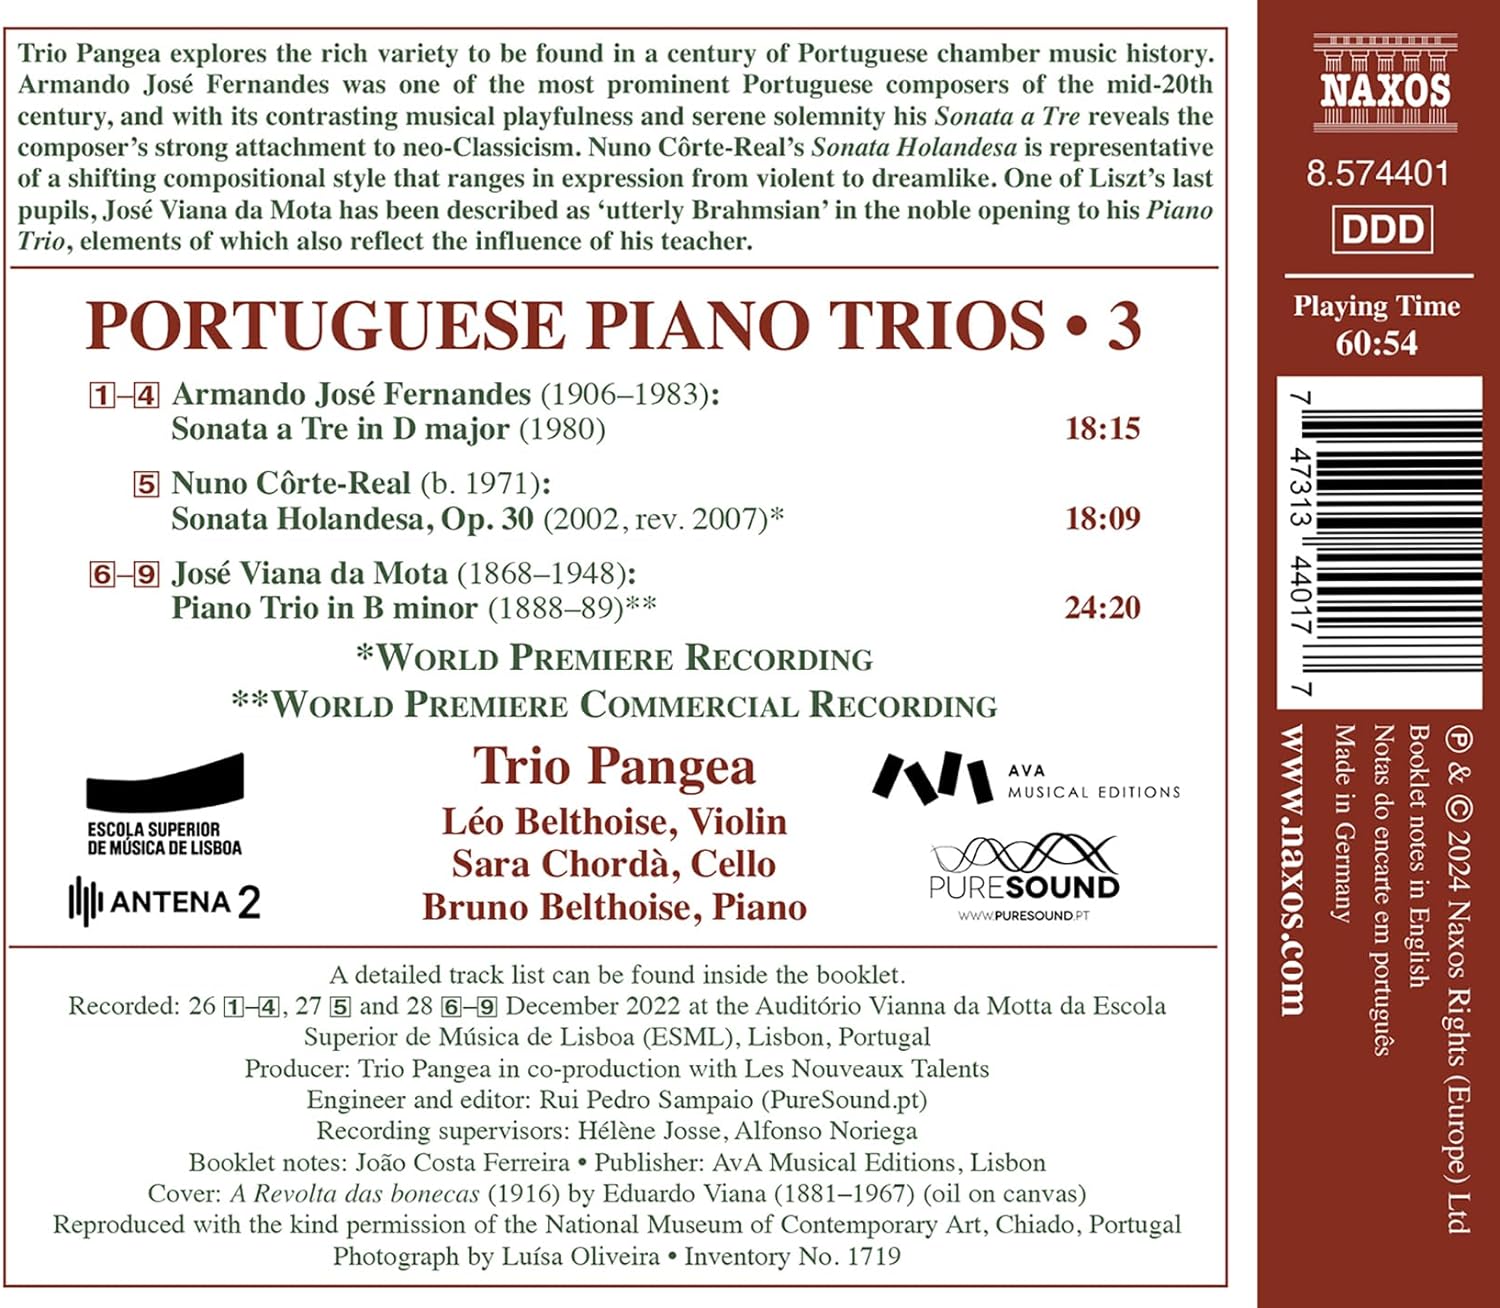 Trio Pangea 포르투갈 작곡가들의 피아노 삼중주 작품 3집 - 페르난데스, 코스테-레알, 비아나 다 모타 (Portuguese Piano Trios, Vol. 3)